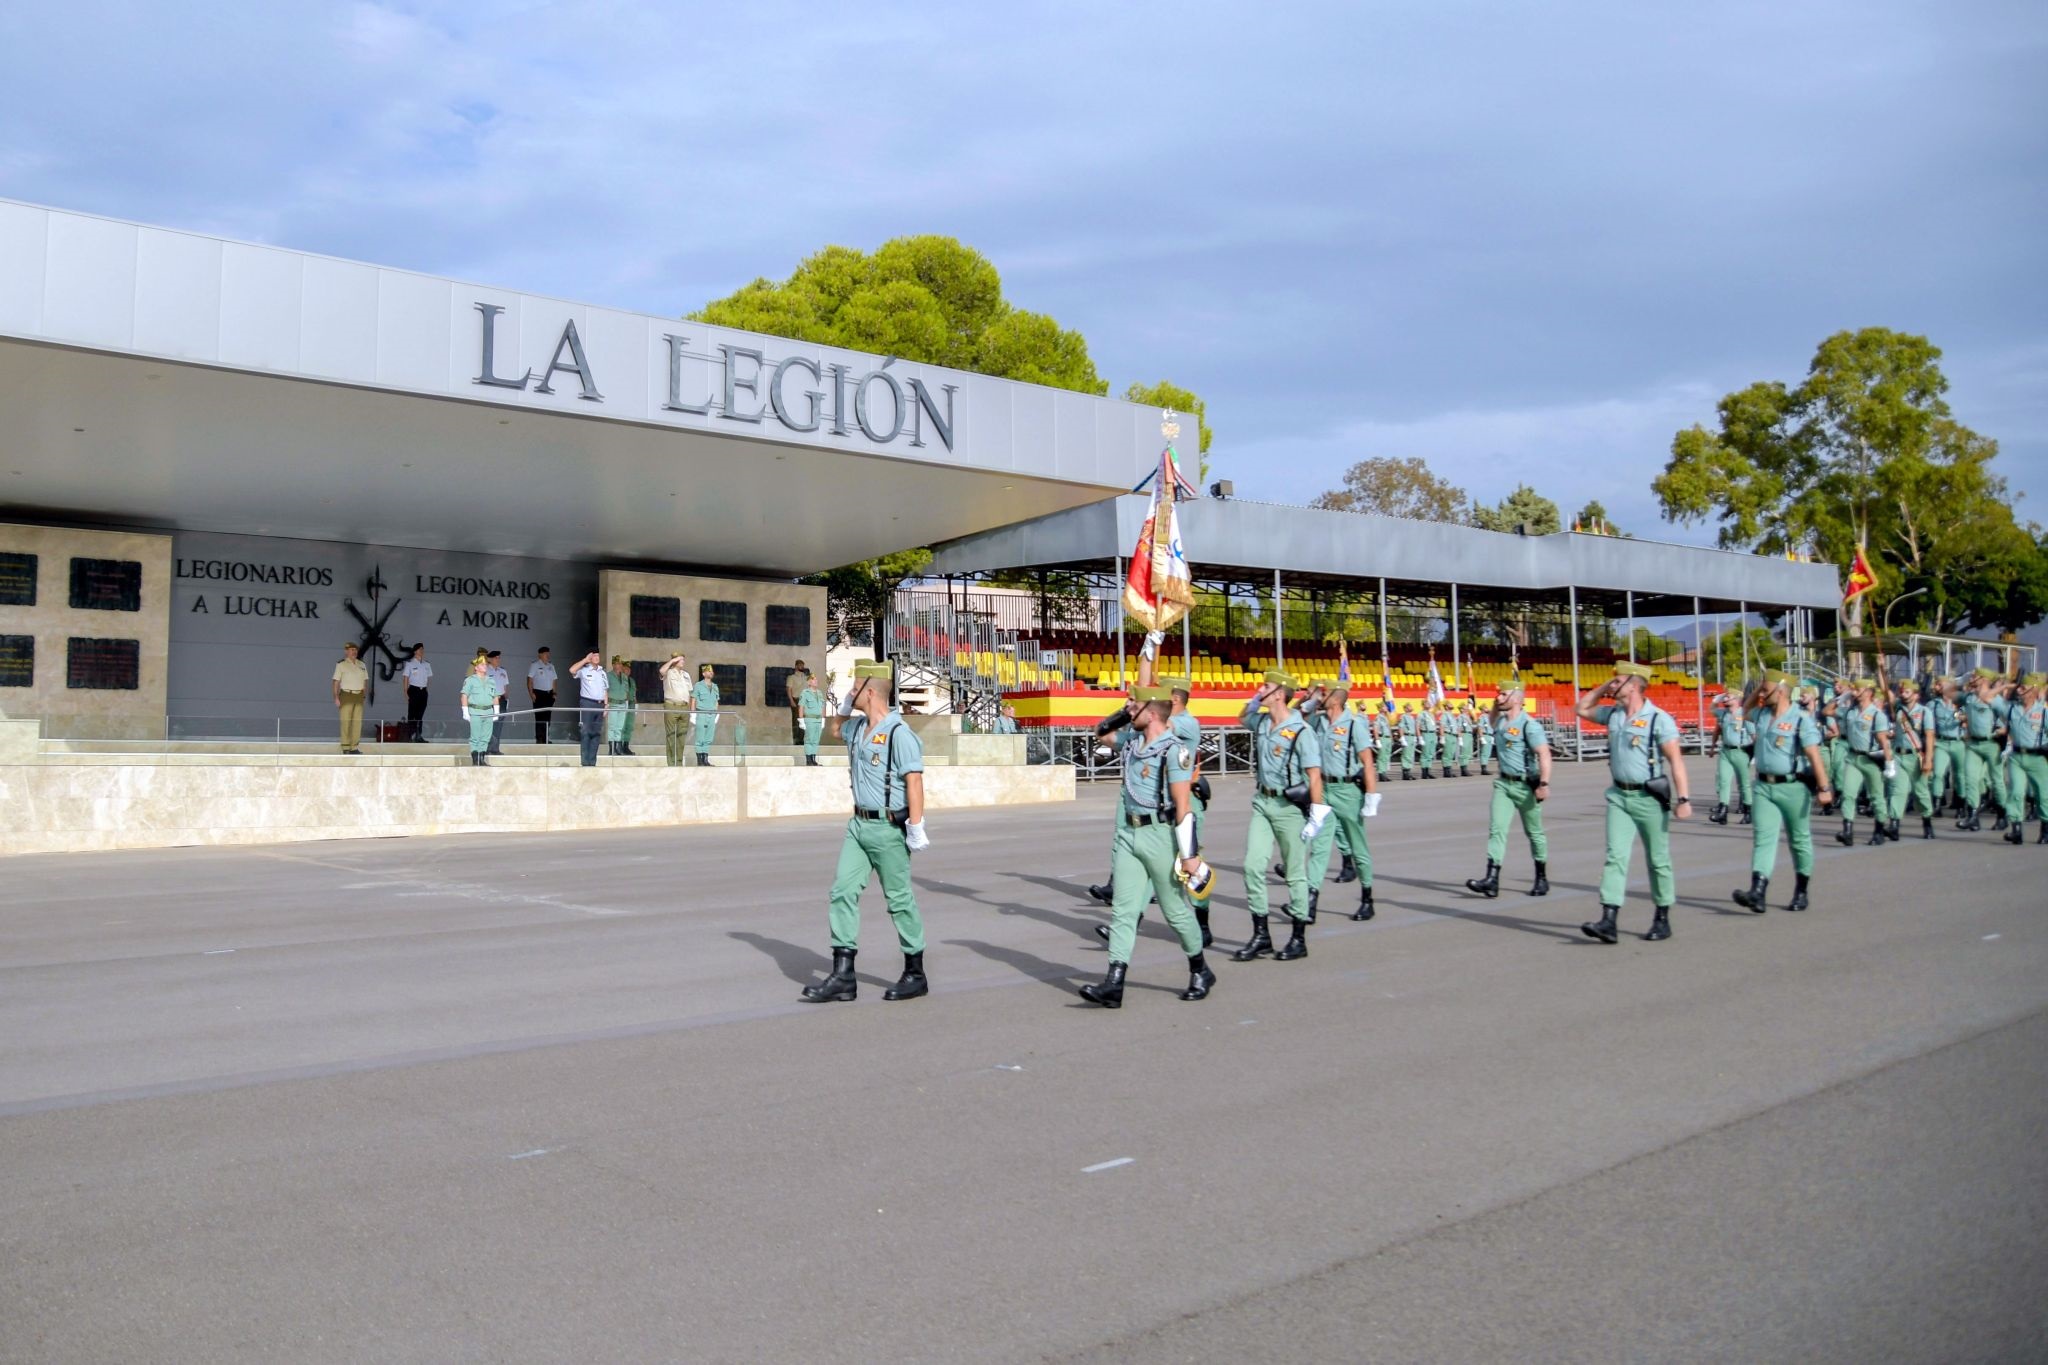 El Jefe de Estado Mayor del Ejército de Portugal visita el Mando de Adiestramiento y Doctrina y la Brigada 'Rey Alfonso XIII' de la Legión